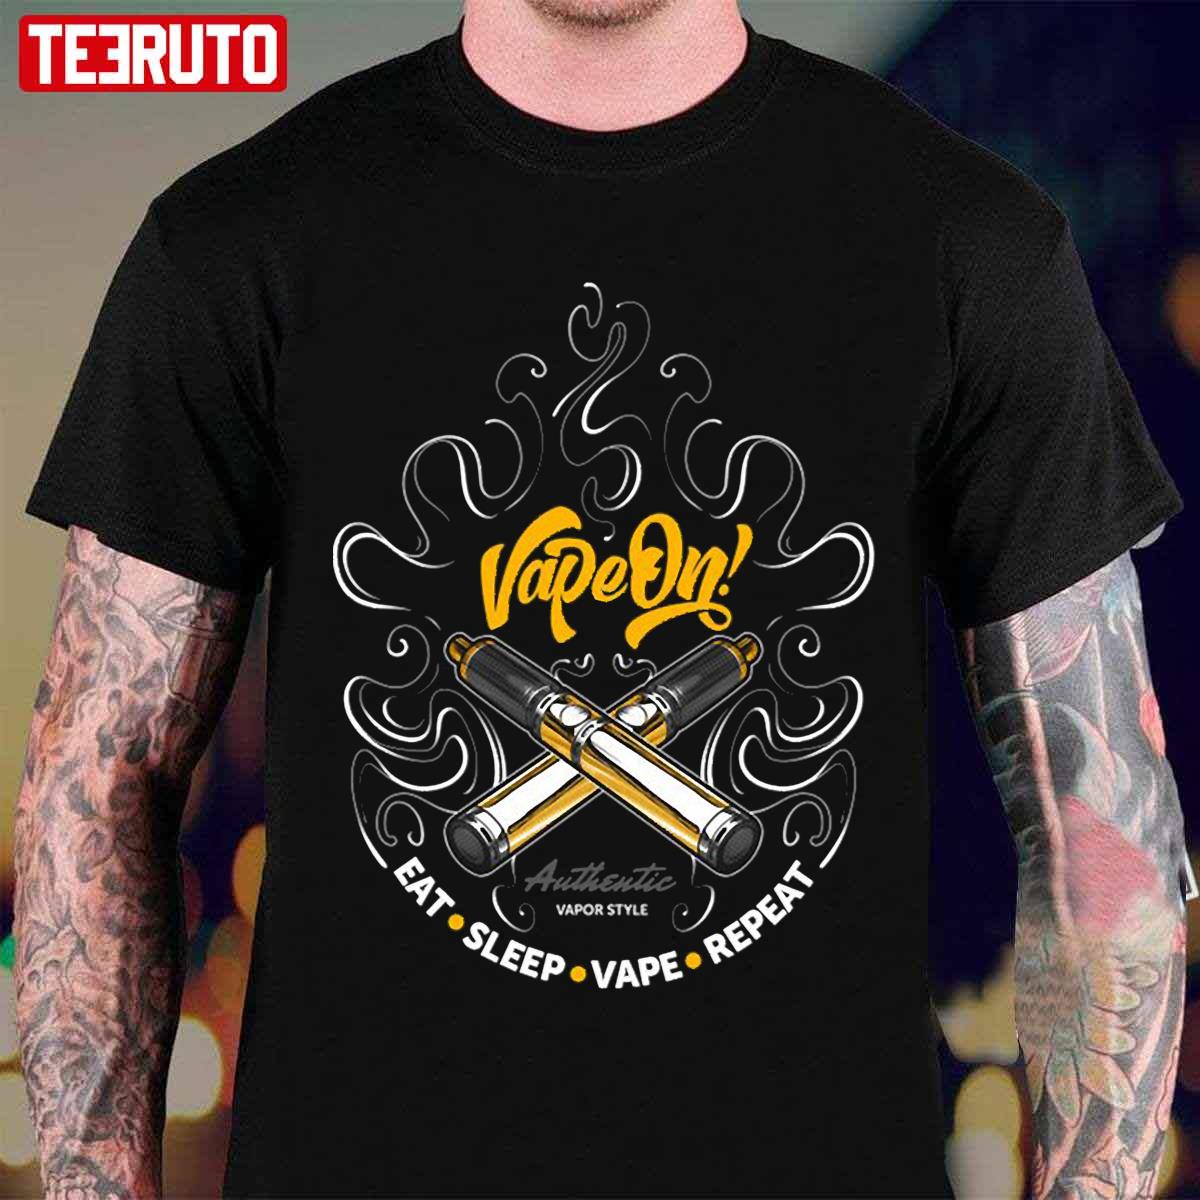 Juul Vape Mode On Art Unisex T-Shirt